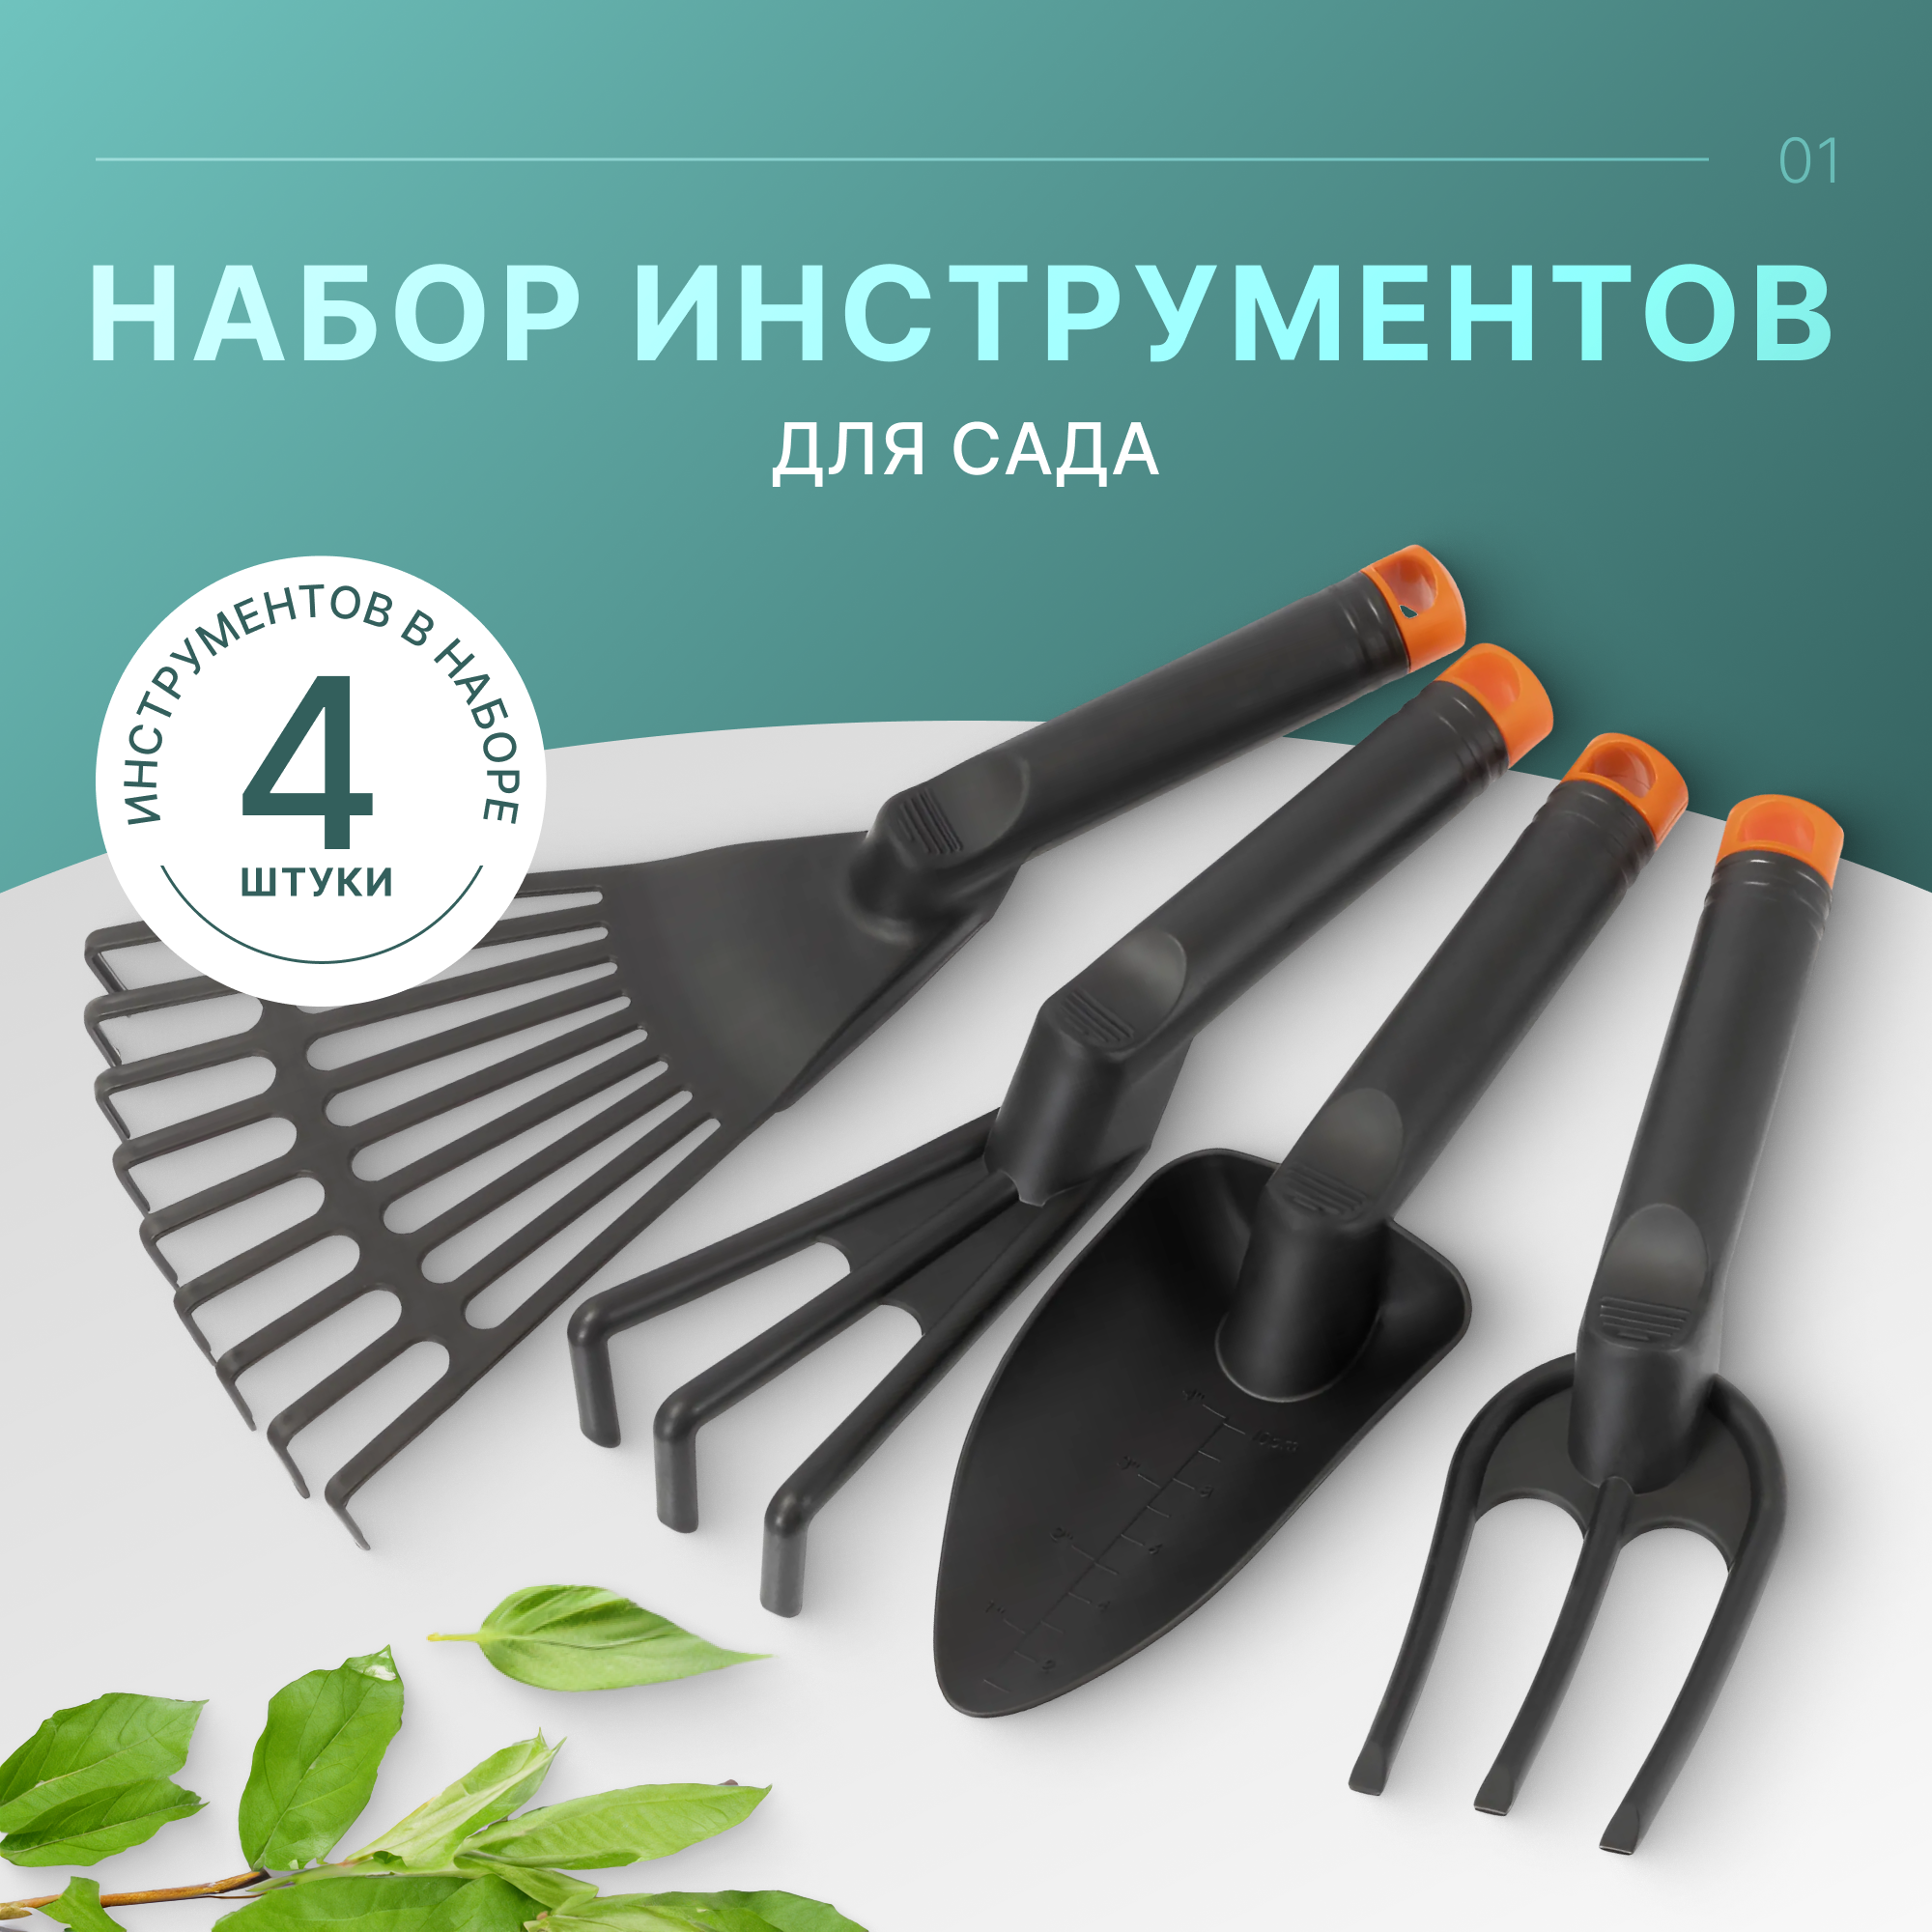 Набор инструментов для сада и огорода из 4 предметов, черный пластик